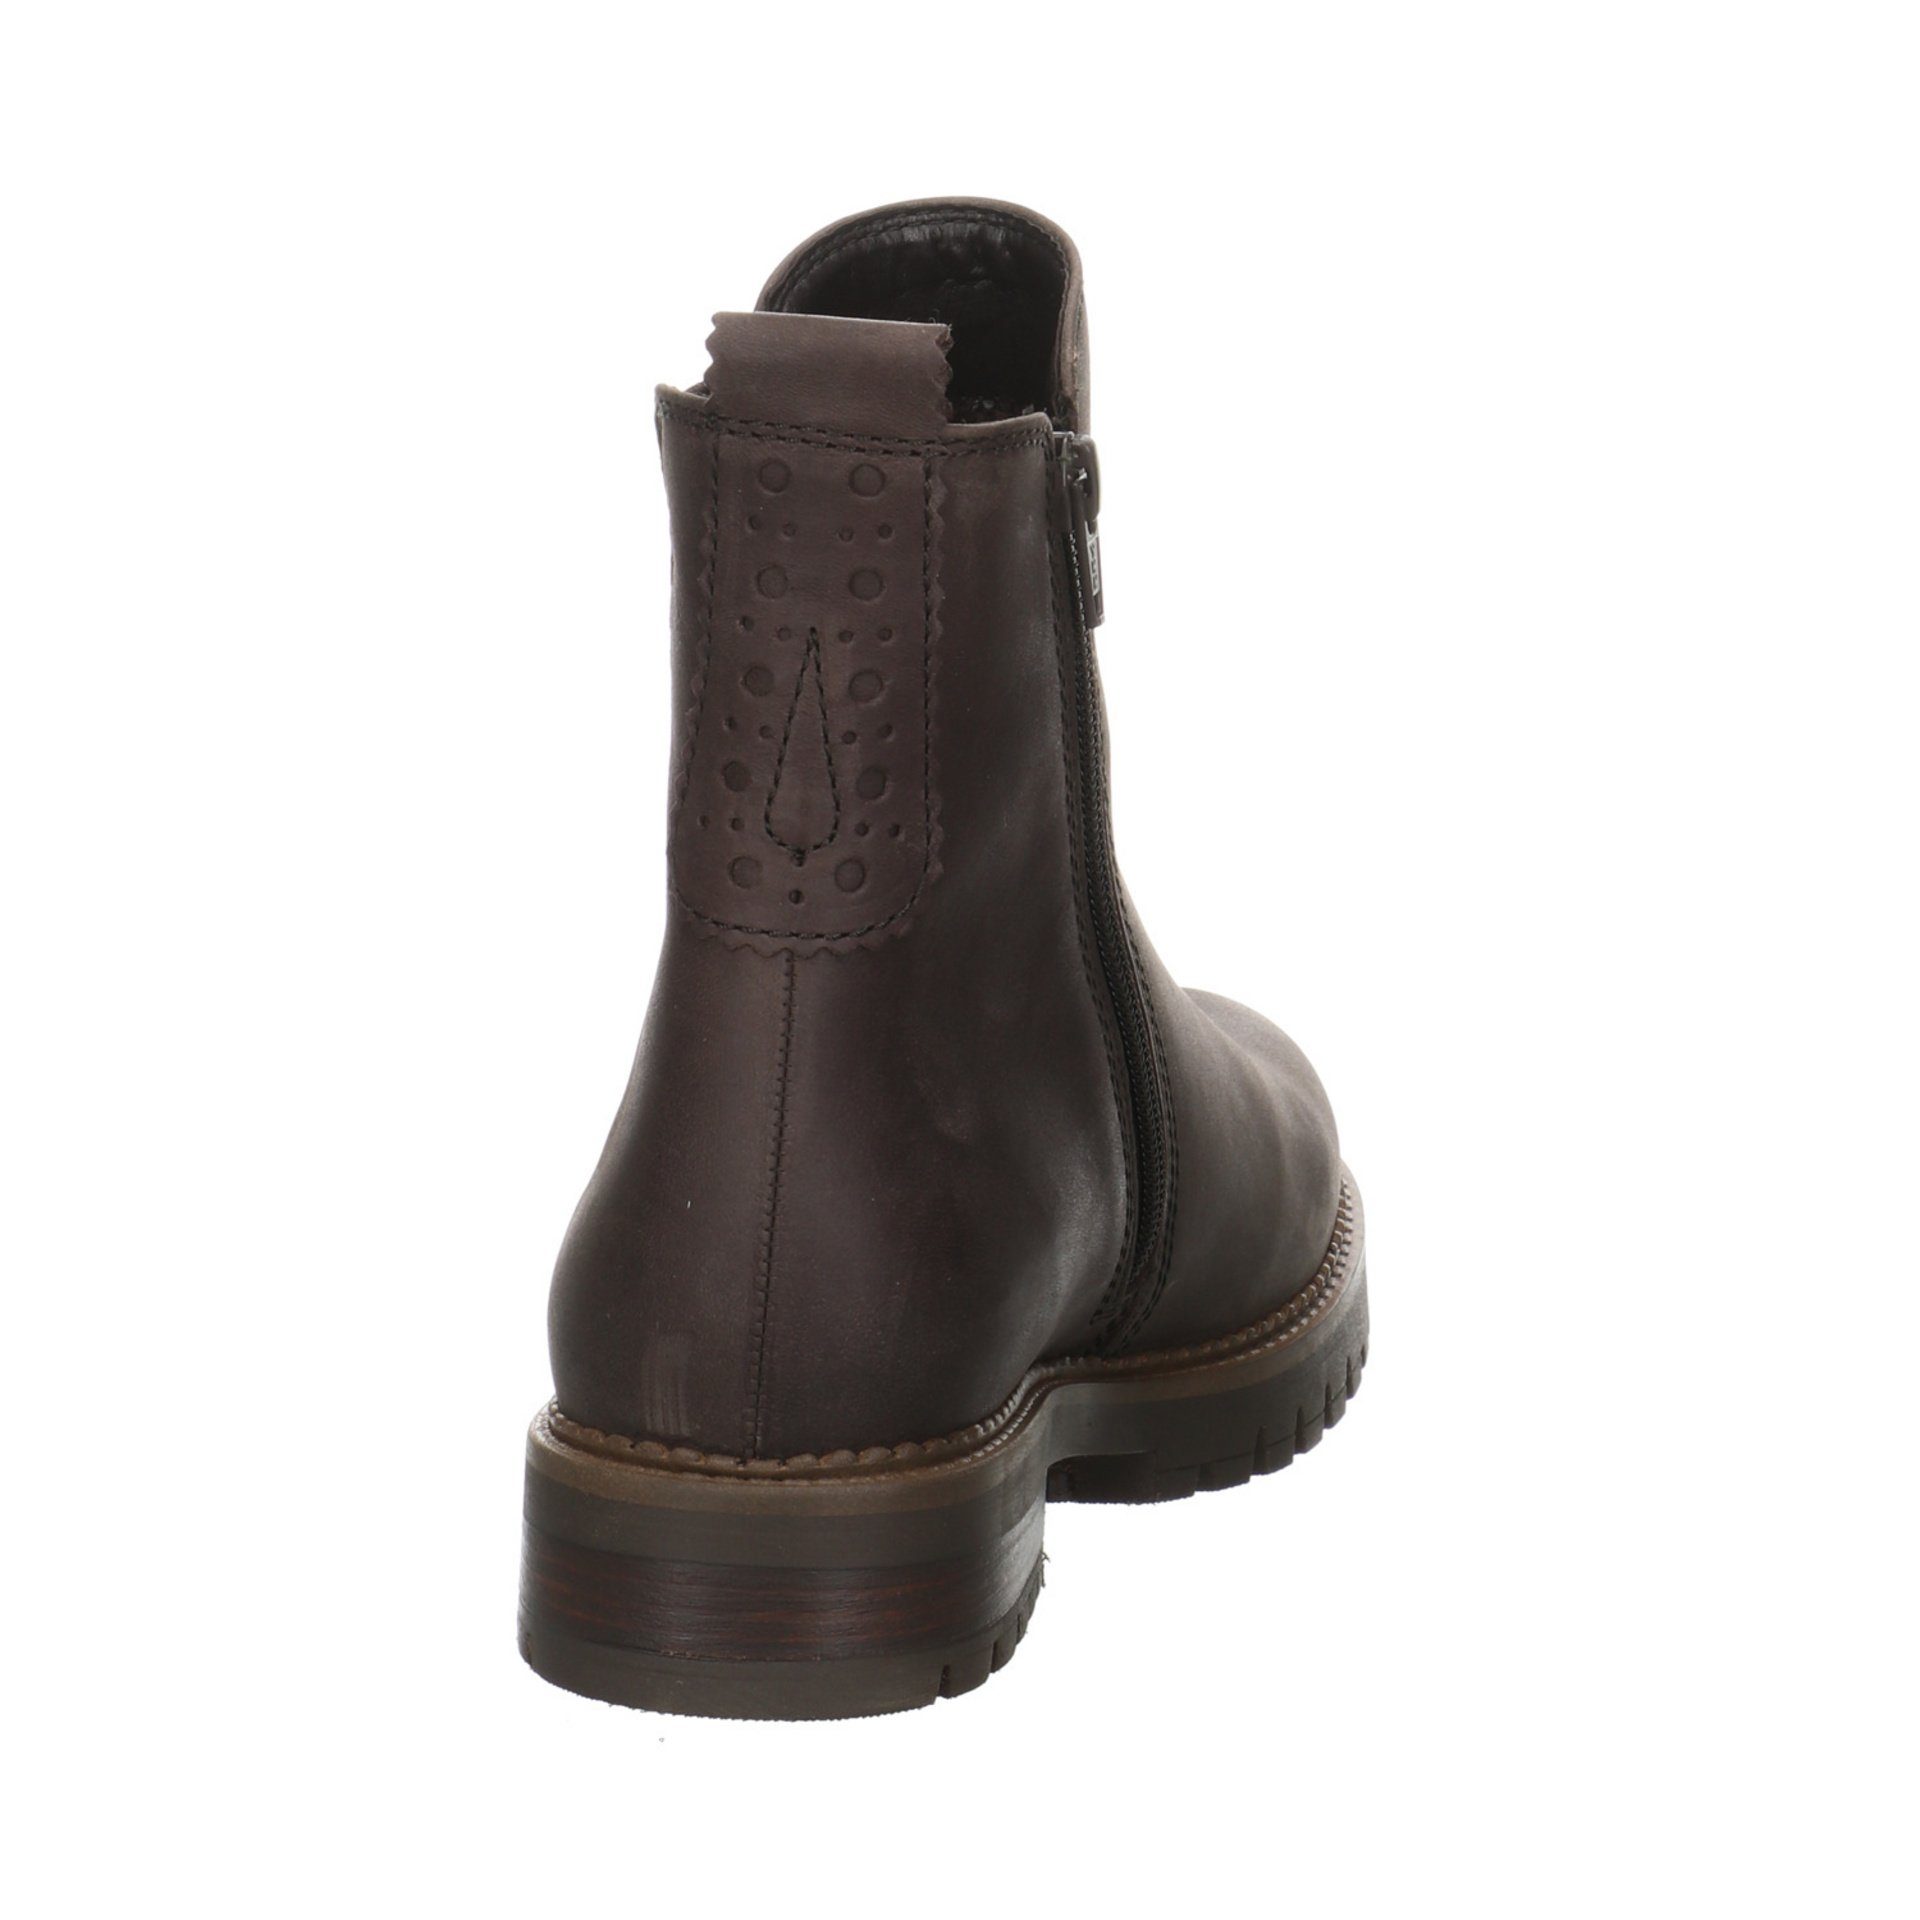 Chelsea-Boots Stiefel Leder-/Textilkombination Braun Stiefel (espresso) Damen Gabor Schuhe